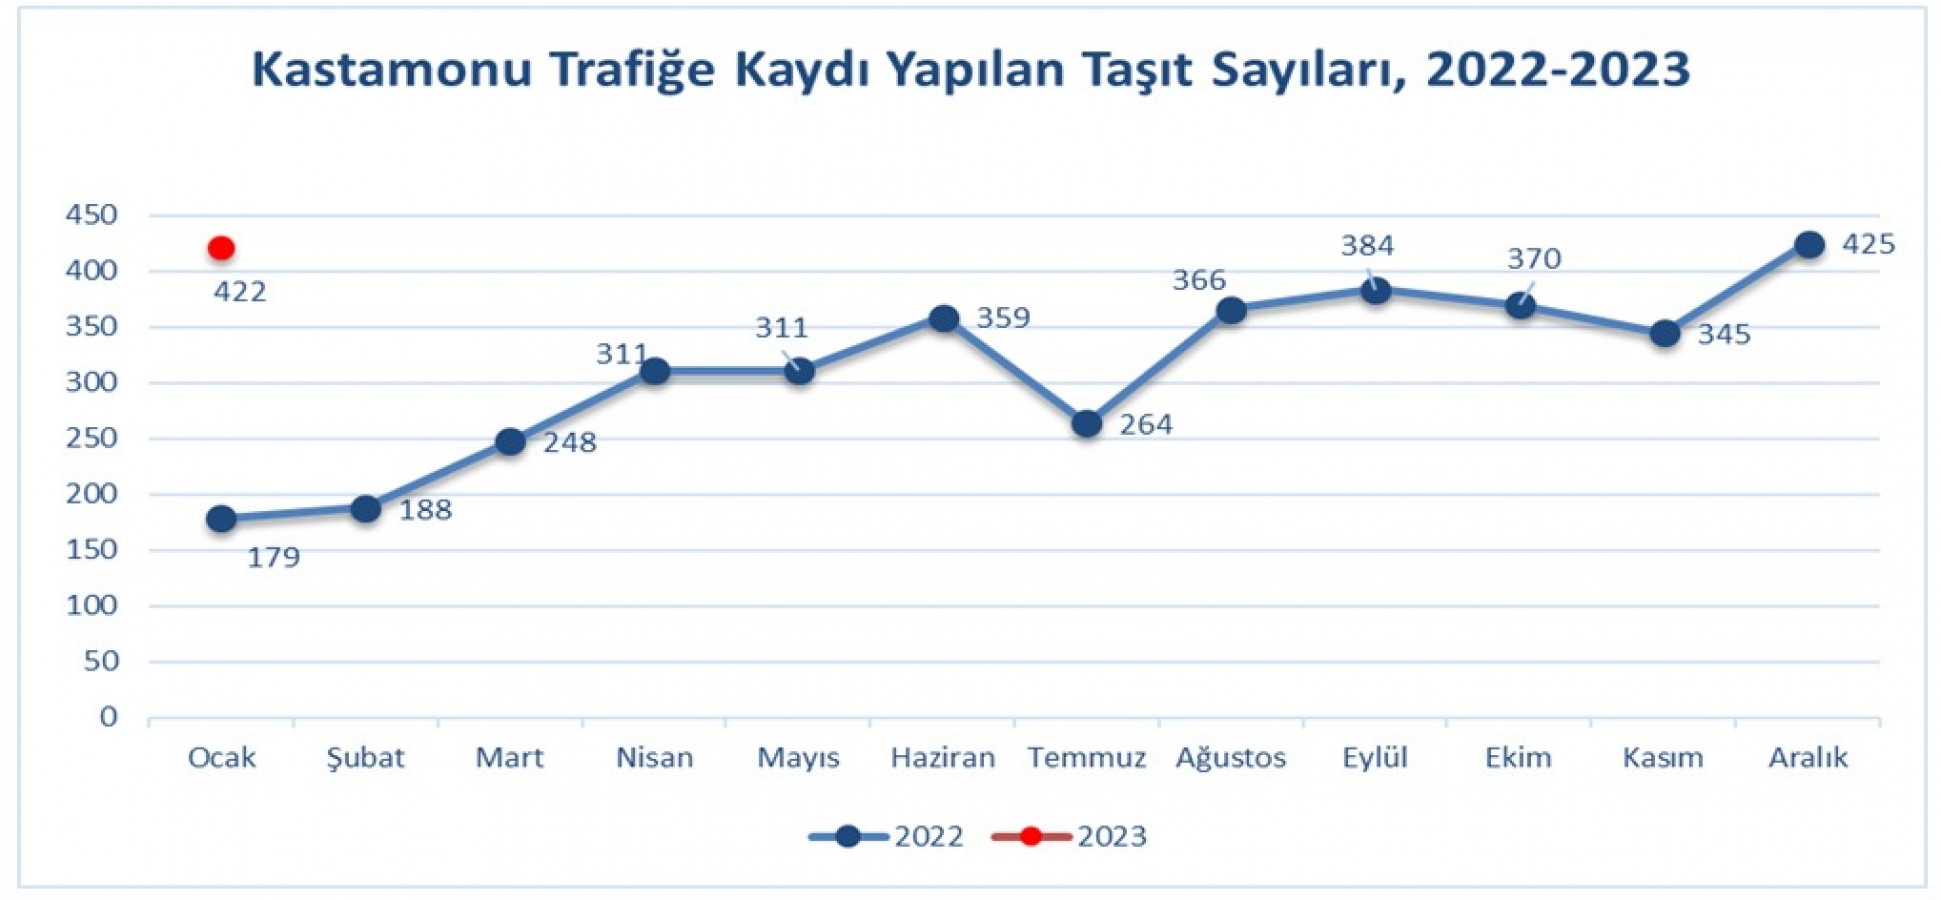 Kastamonu trafiğine Ocak’ta 422 taşıt daha çıktı;